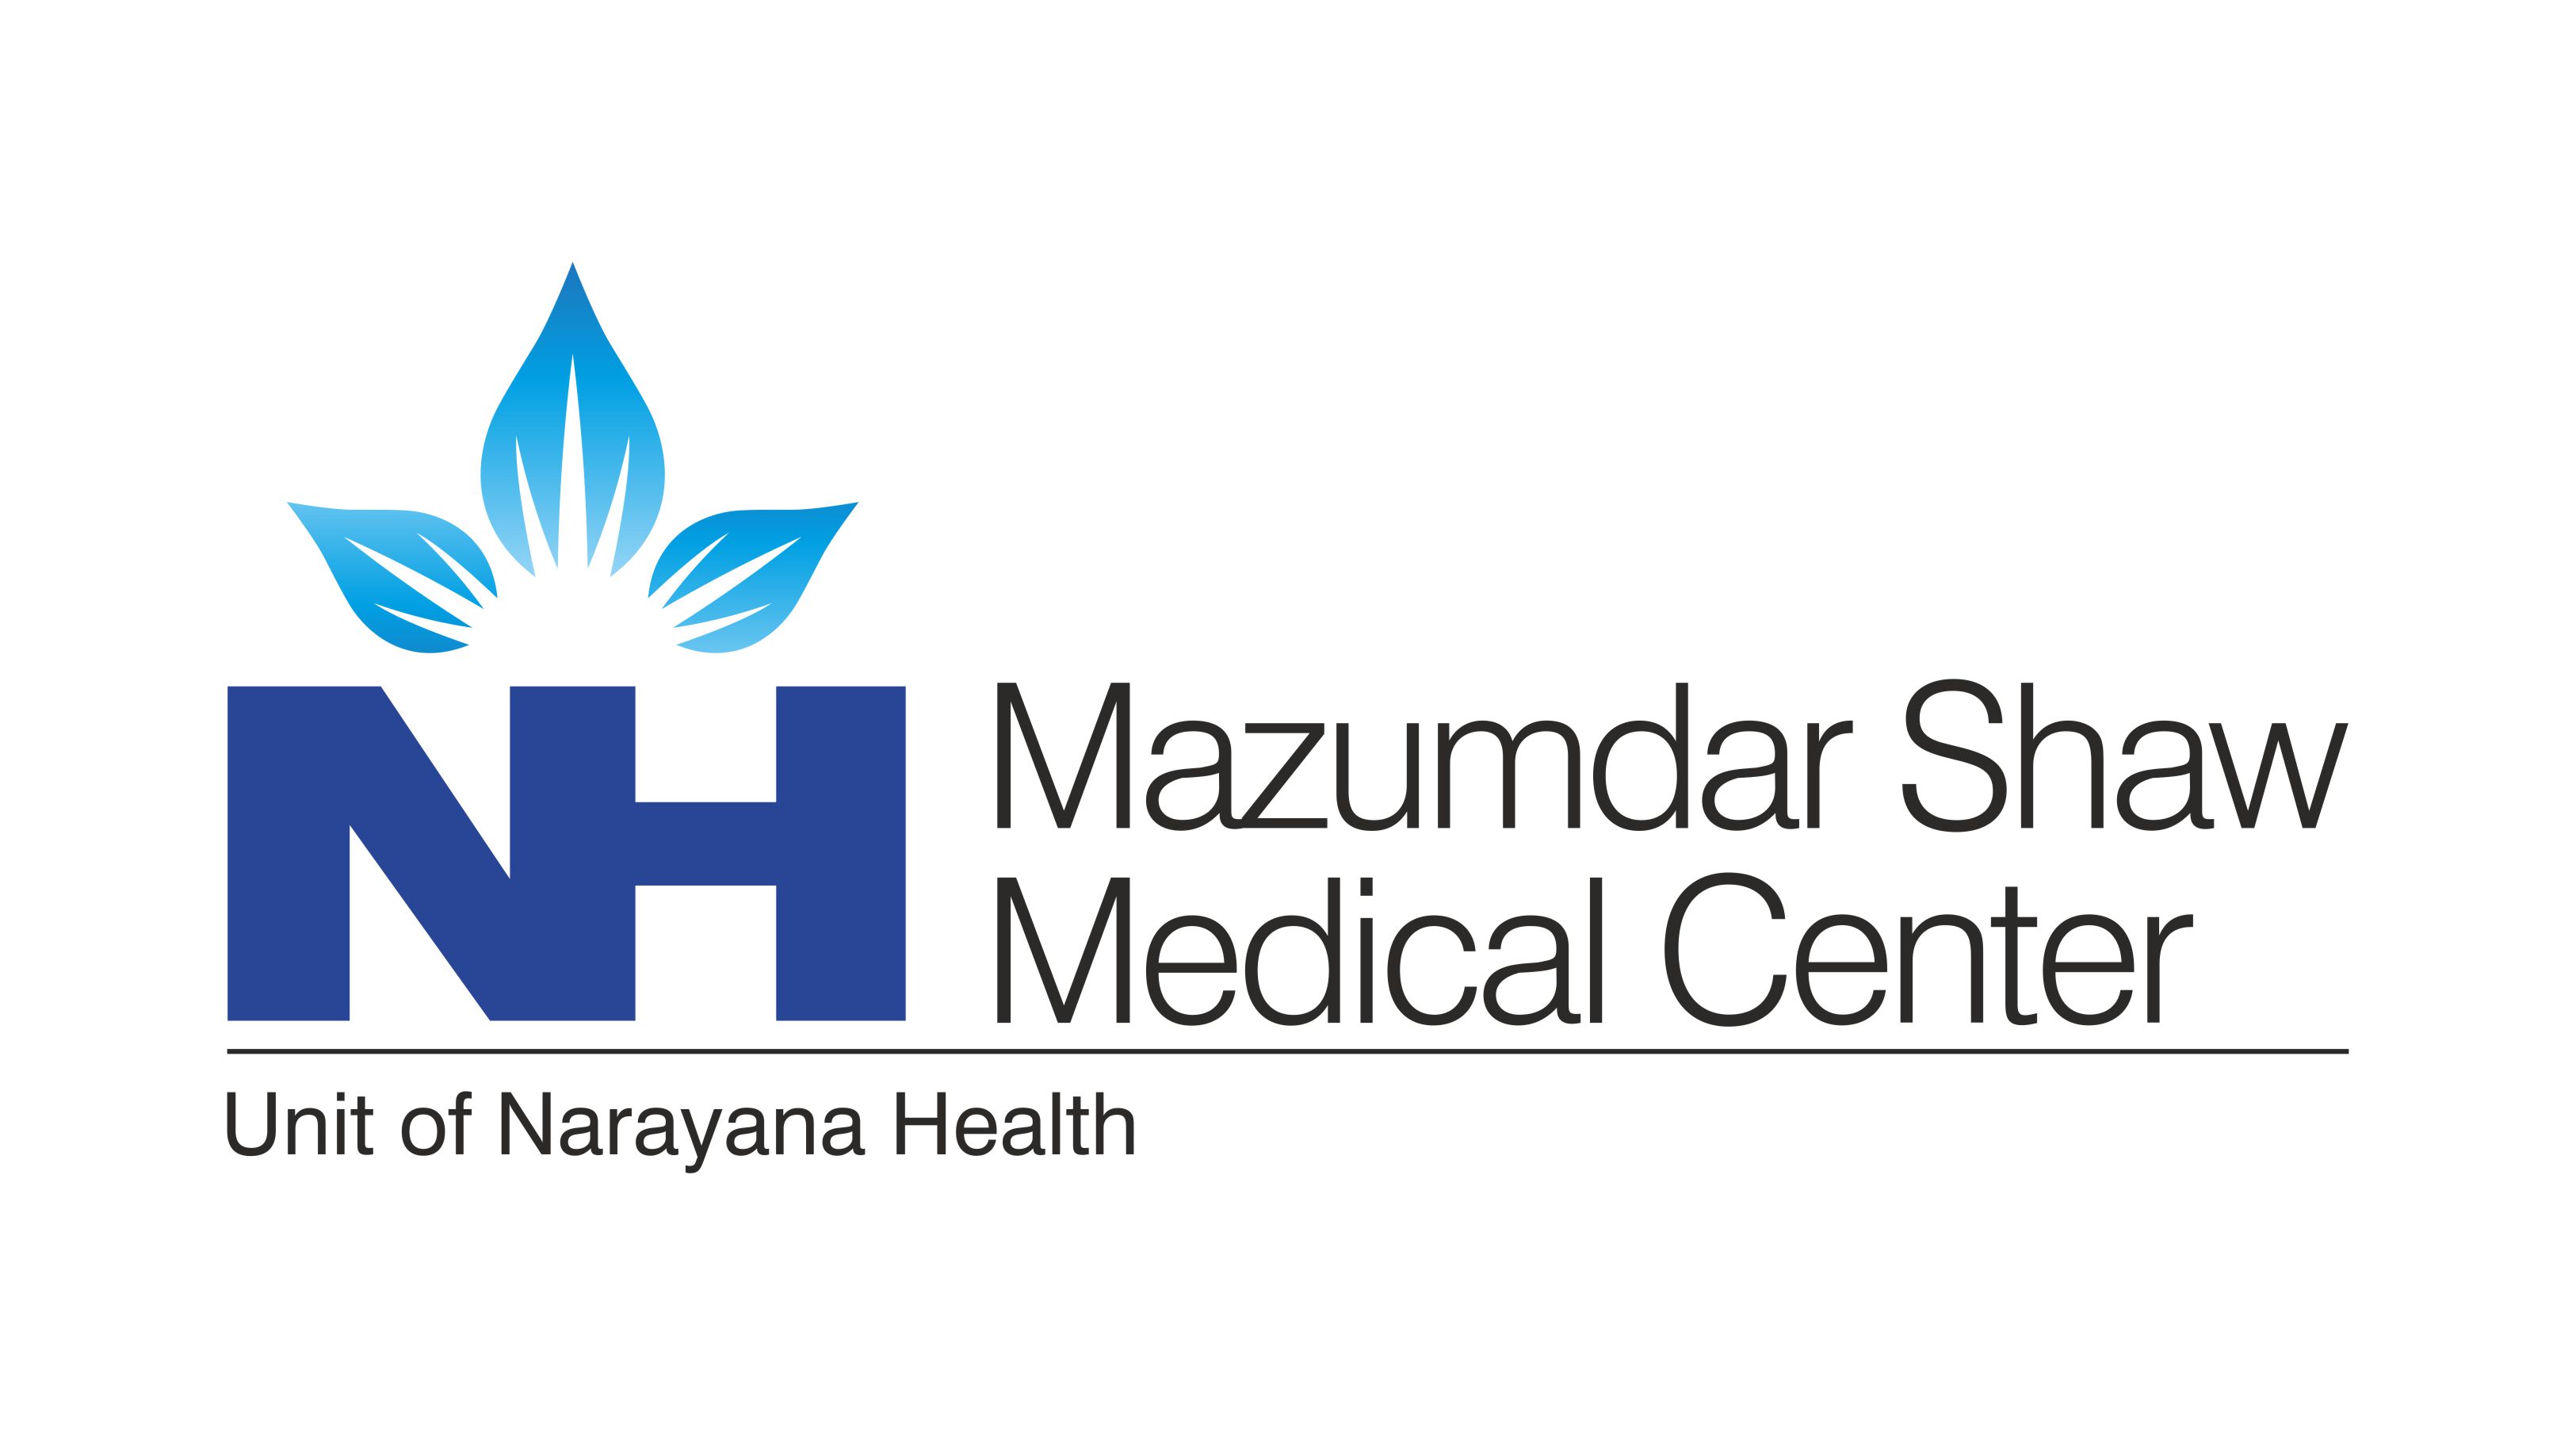 Mazumdar Shaw Medical Center